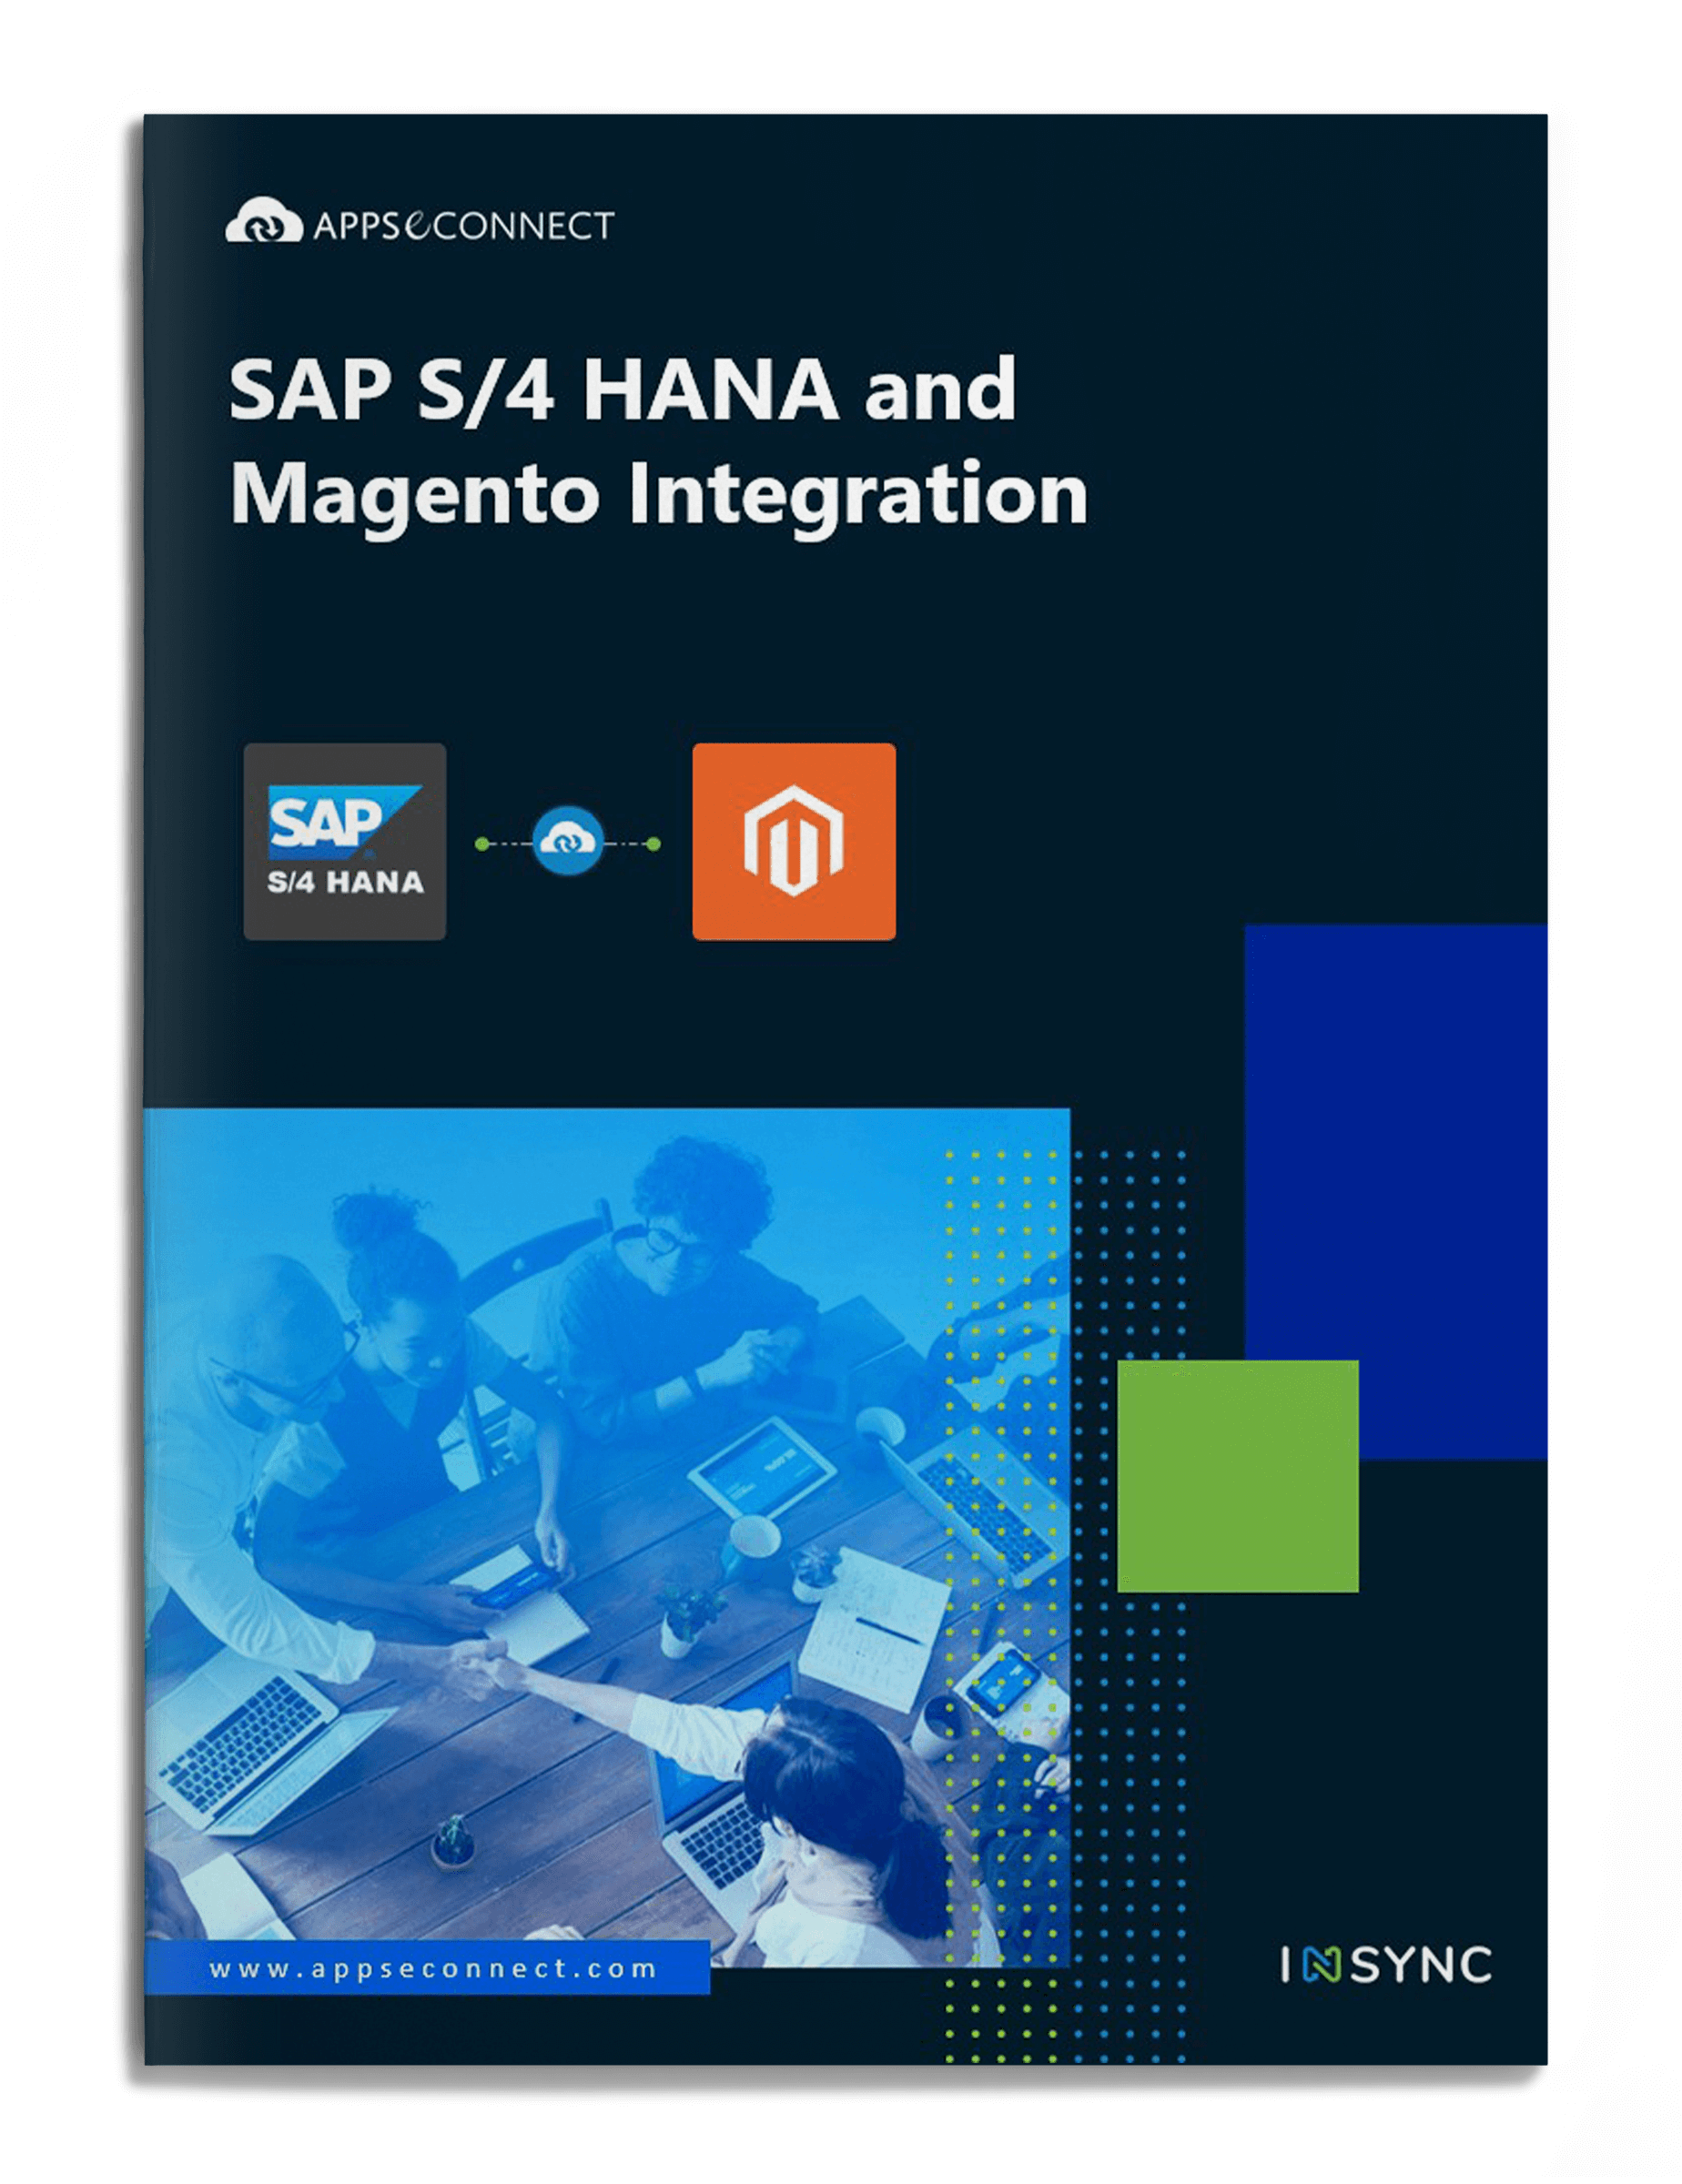 sap-s4-hana-magento-integration-brochure-cover